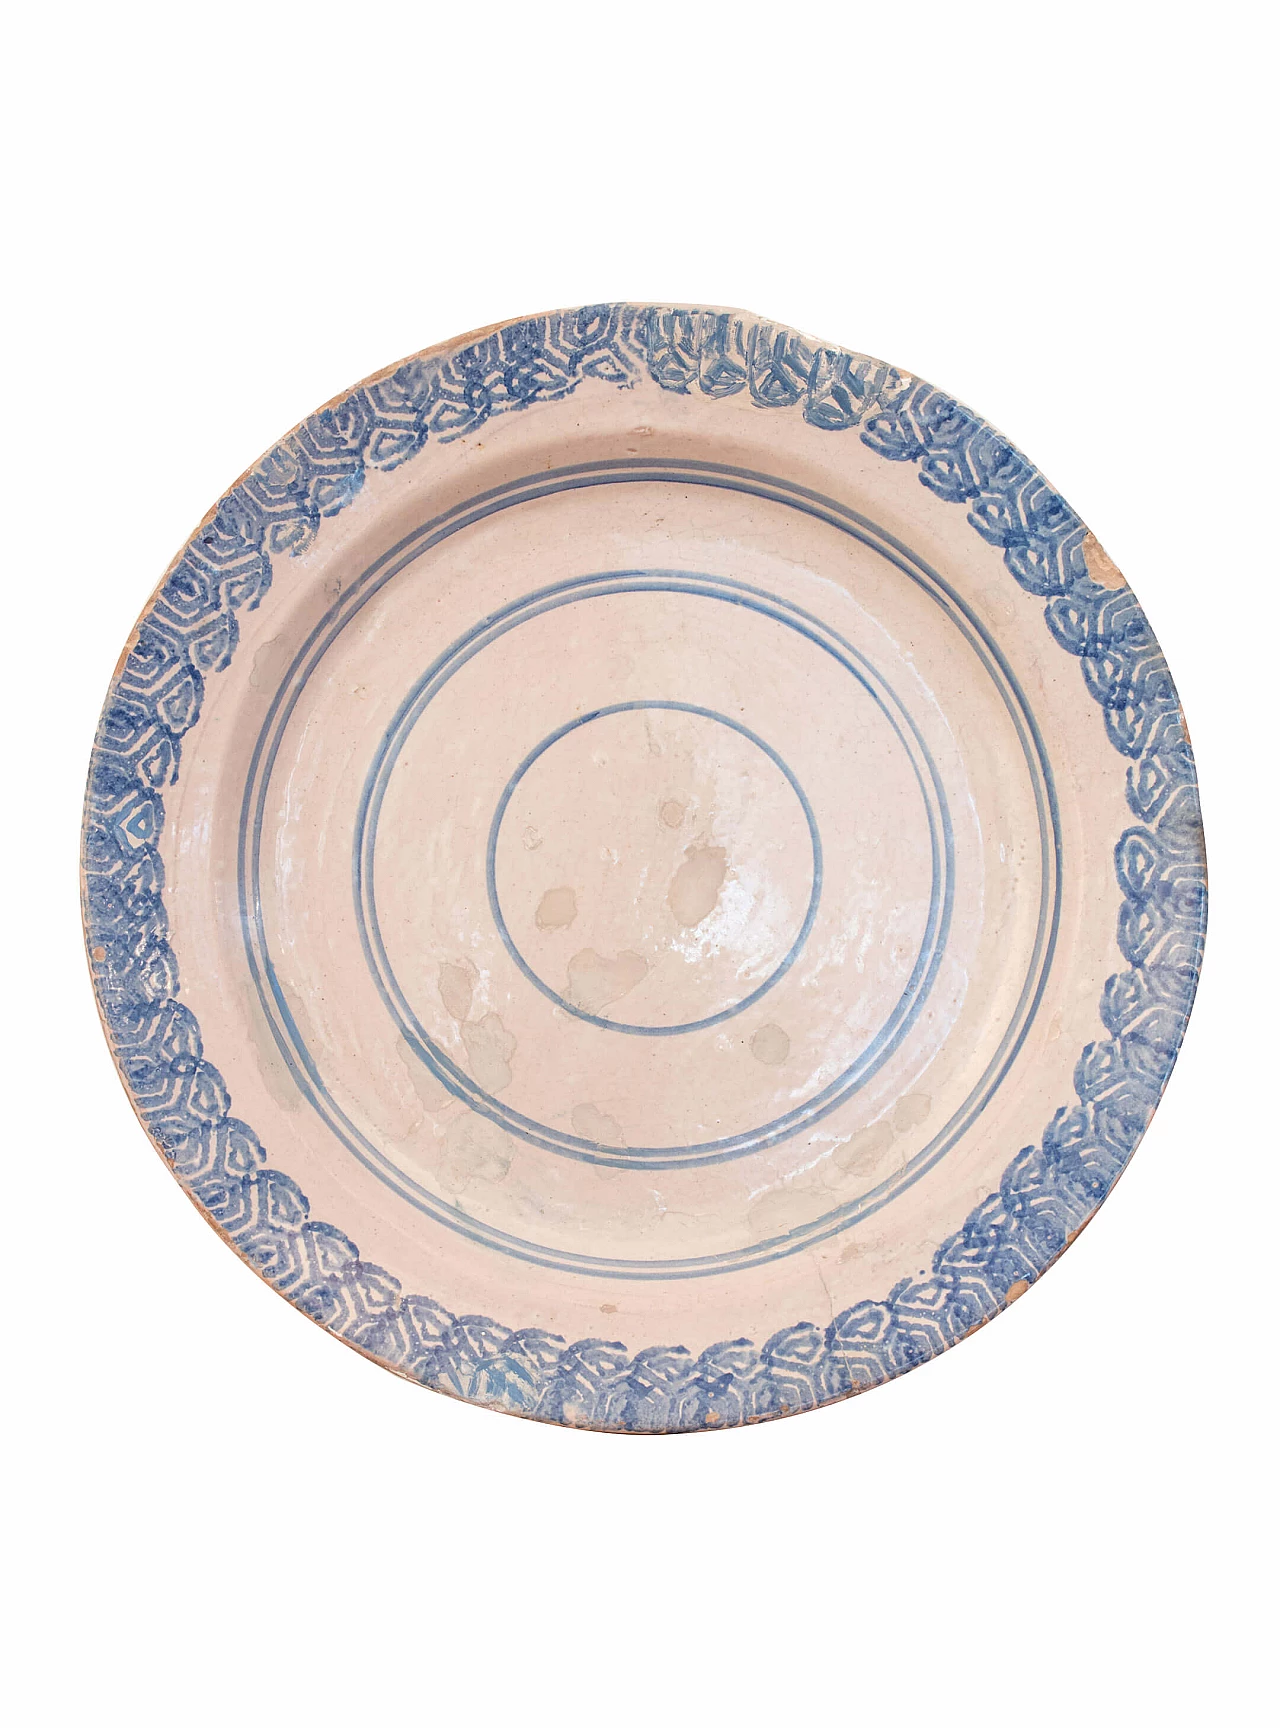 Laterza ceramic plate, 18th century 1084754